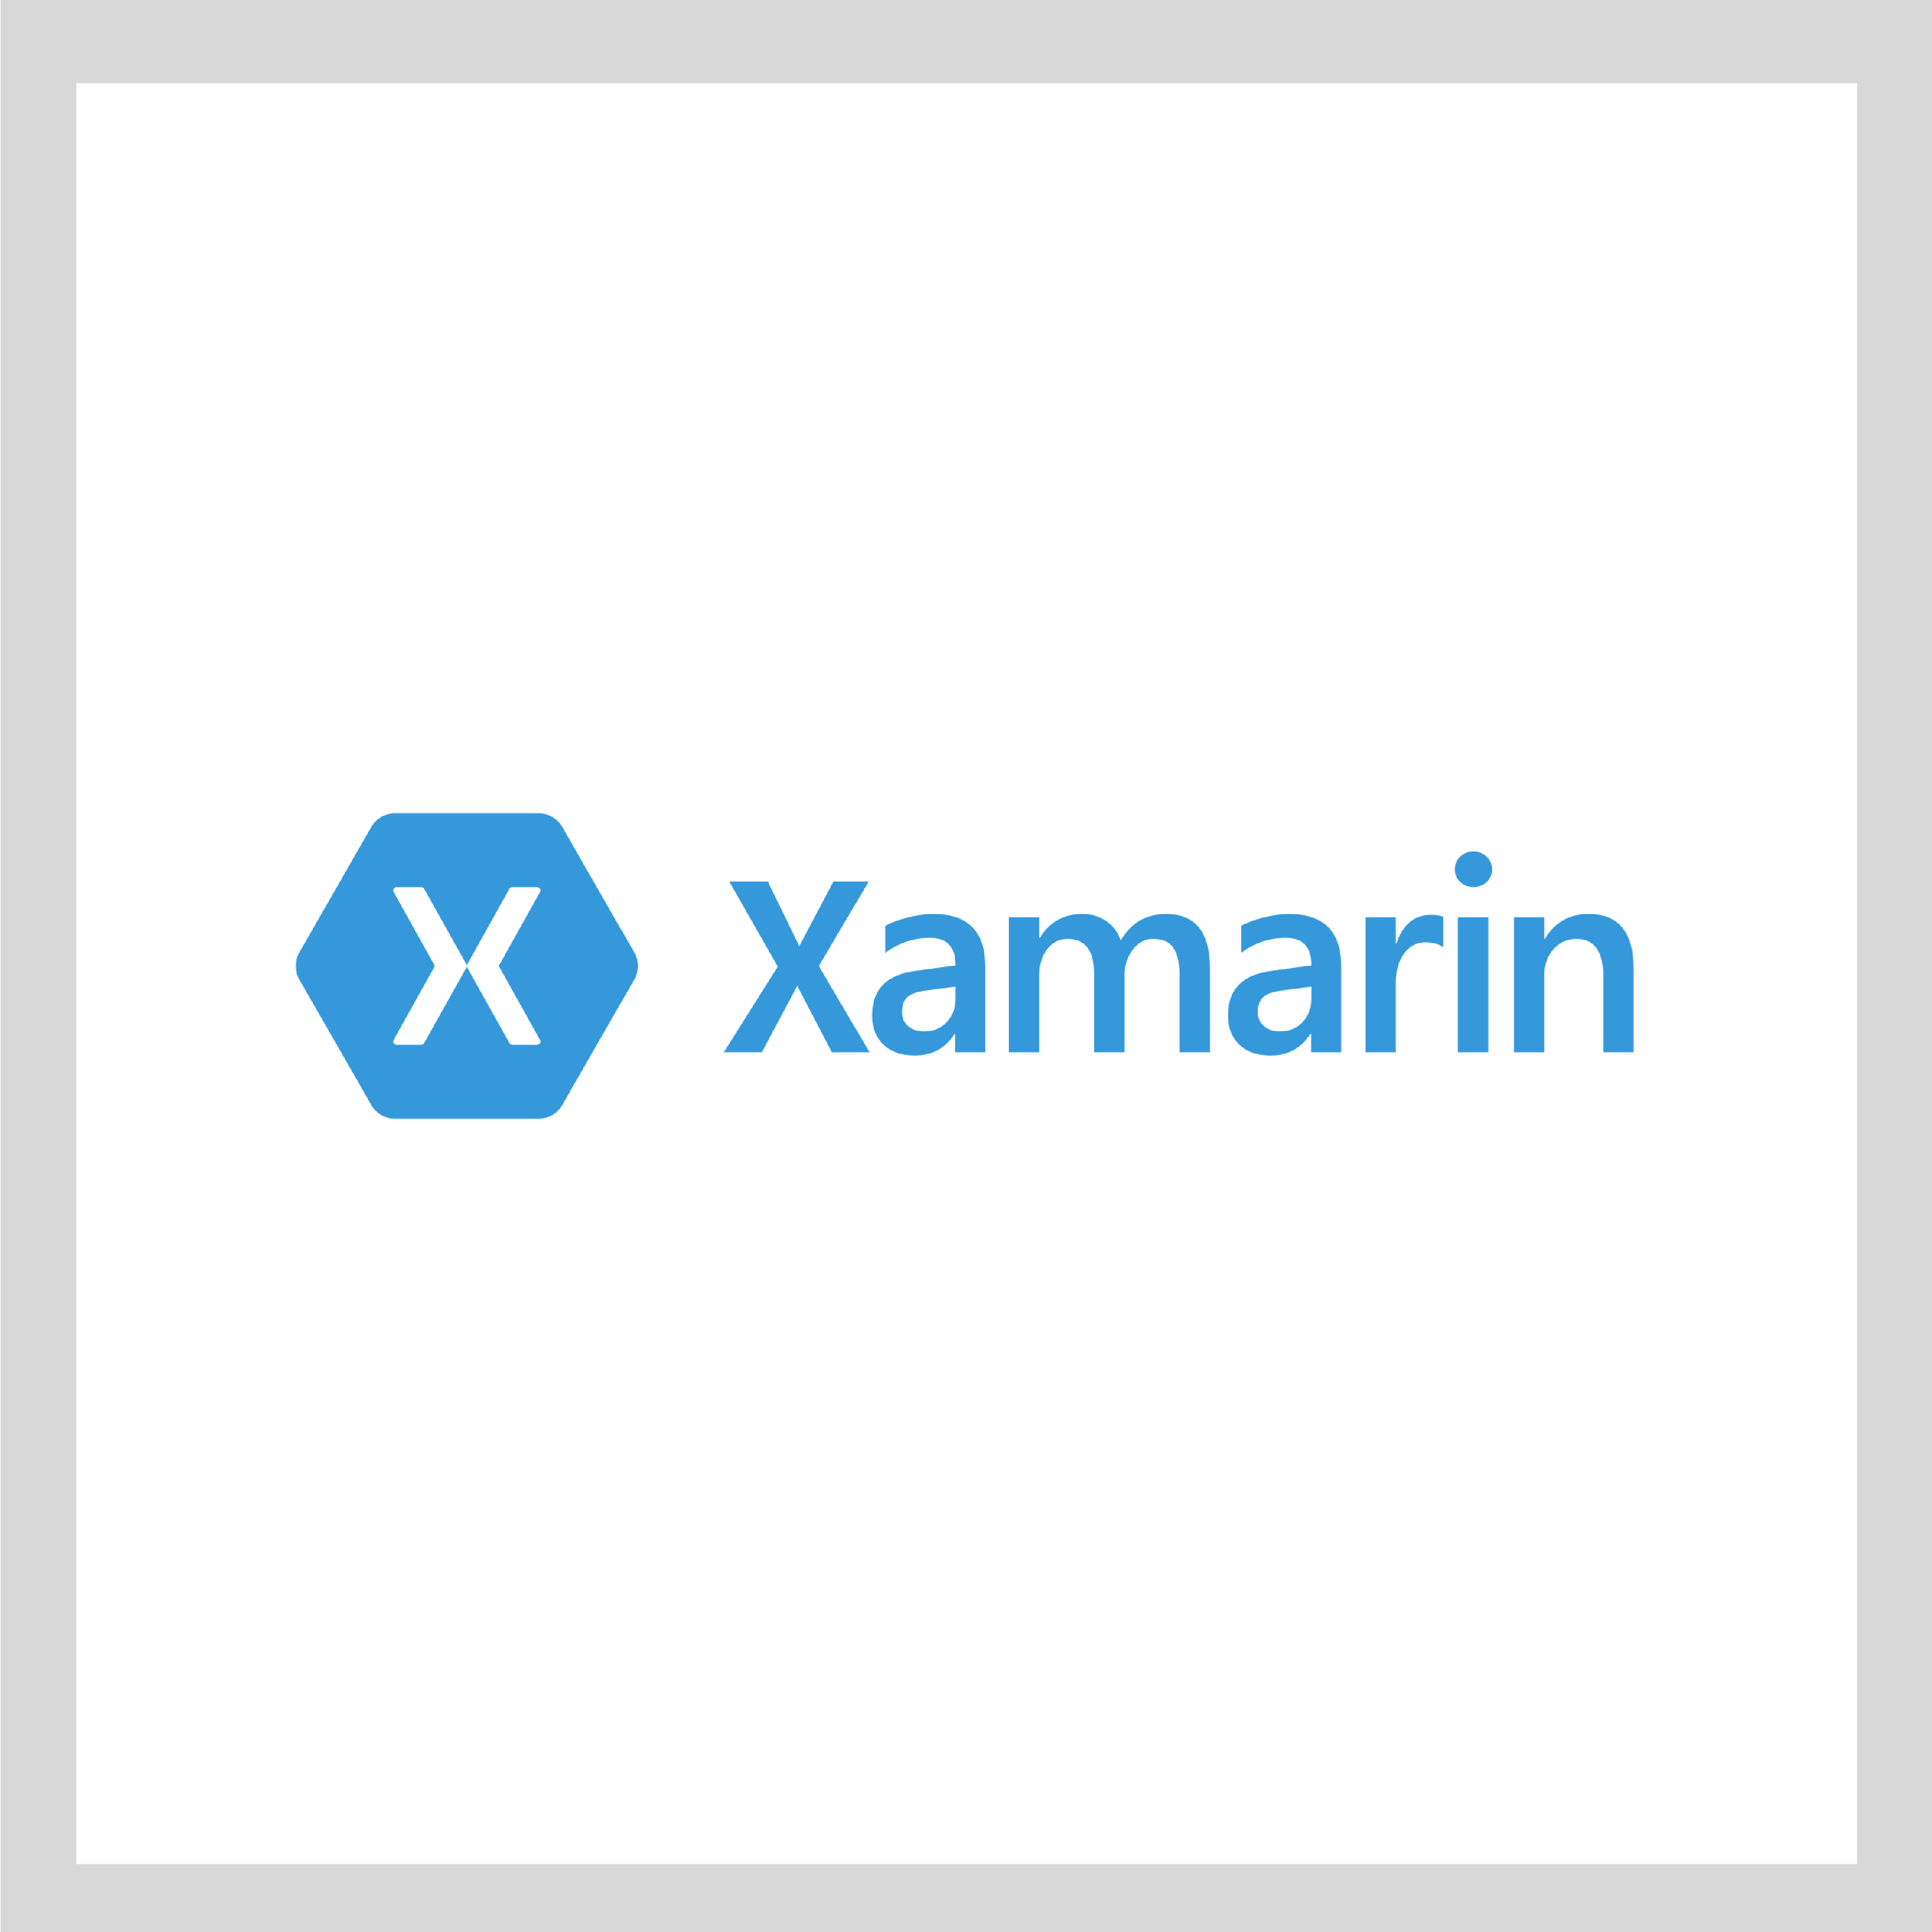 Xamarin is an Efficient Technology